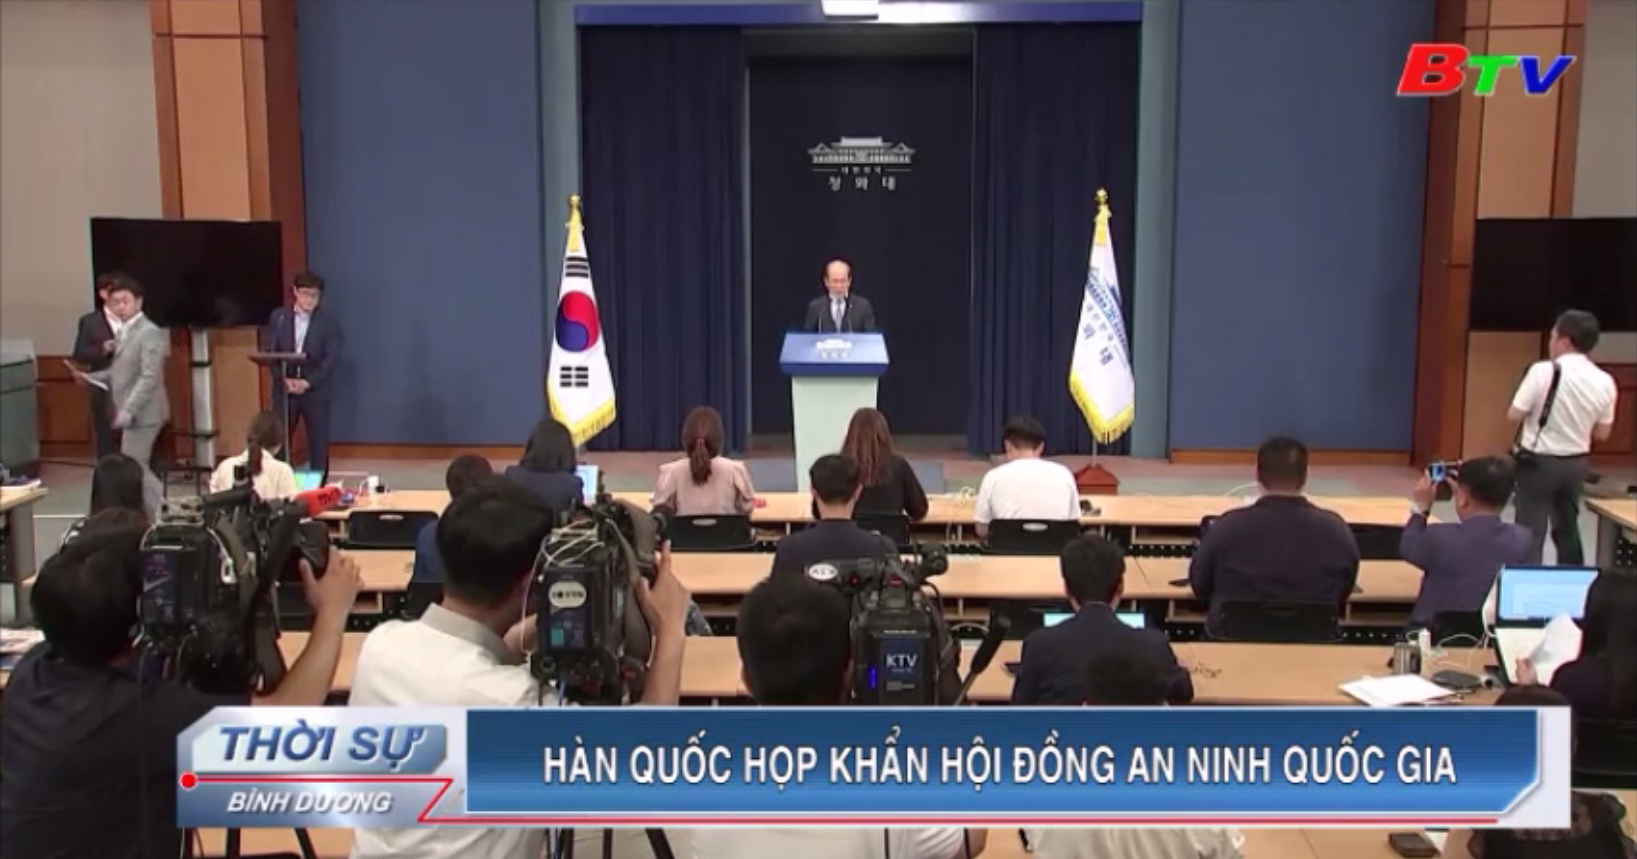 Hàn Quốc họp khẩn Hội đồng An ninh Quốc gia